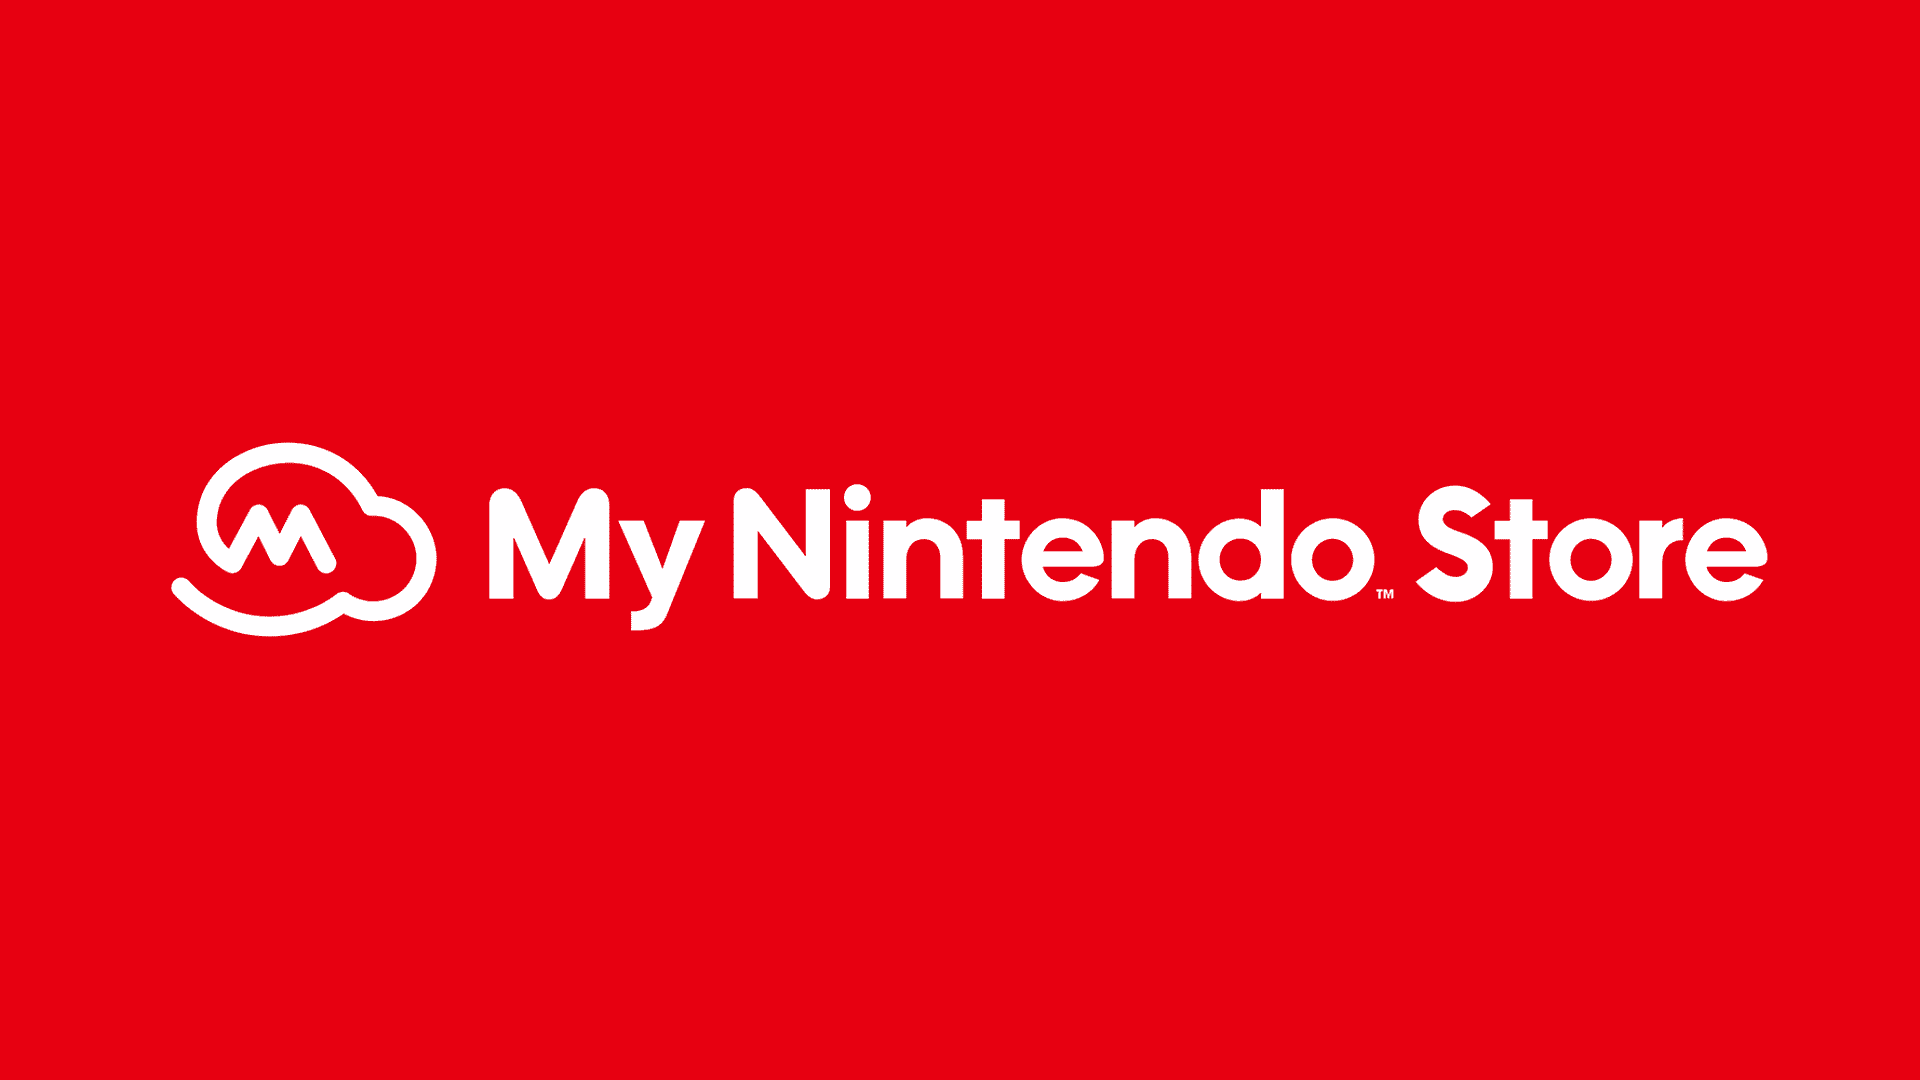 La My Nintendo Store europea está inactiva por mantenimiento: durará “unas pocas semanas”